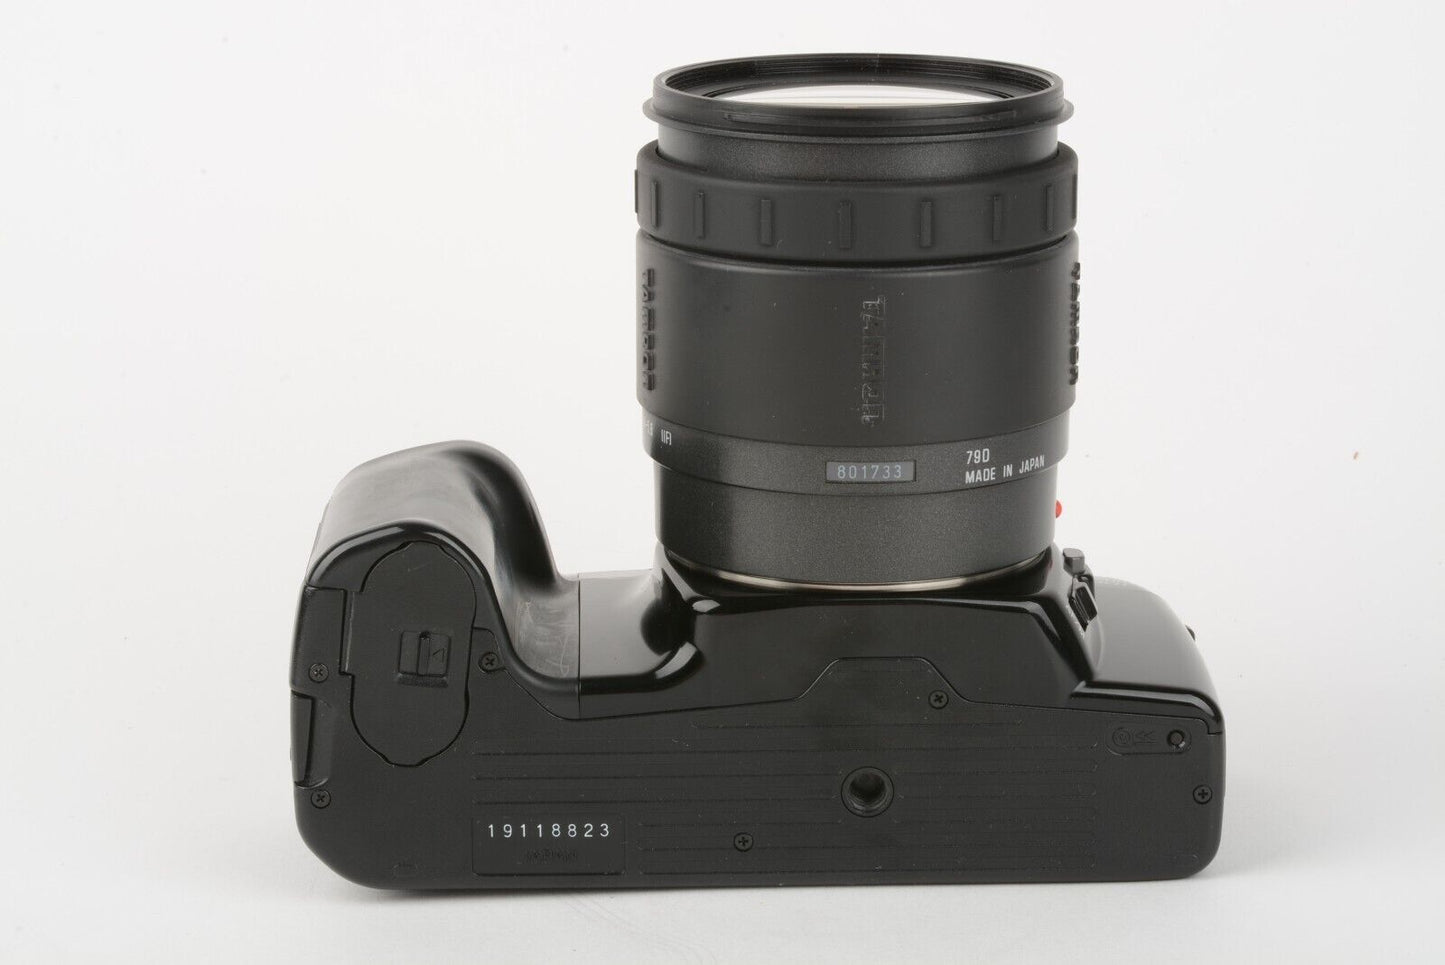 Minolta Maxxum 5000i 35mm SLR w/Tamron 28-105mm zoom, hood, case, UV